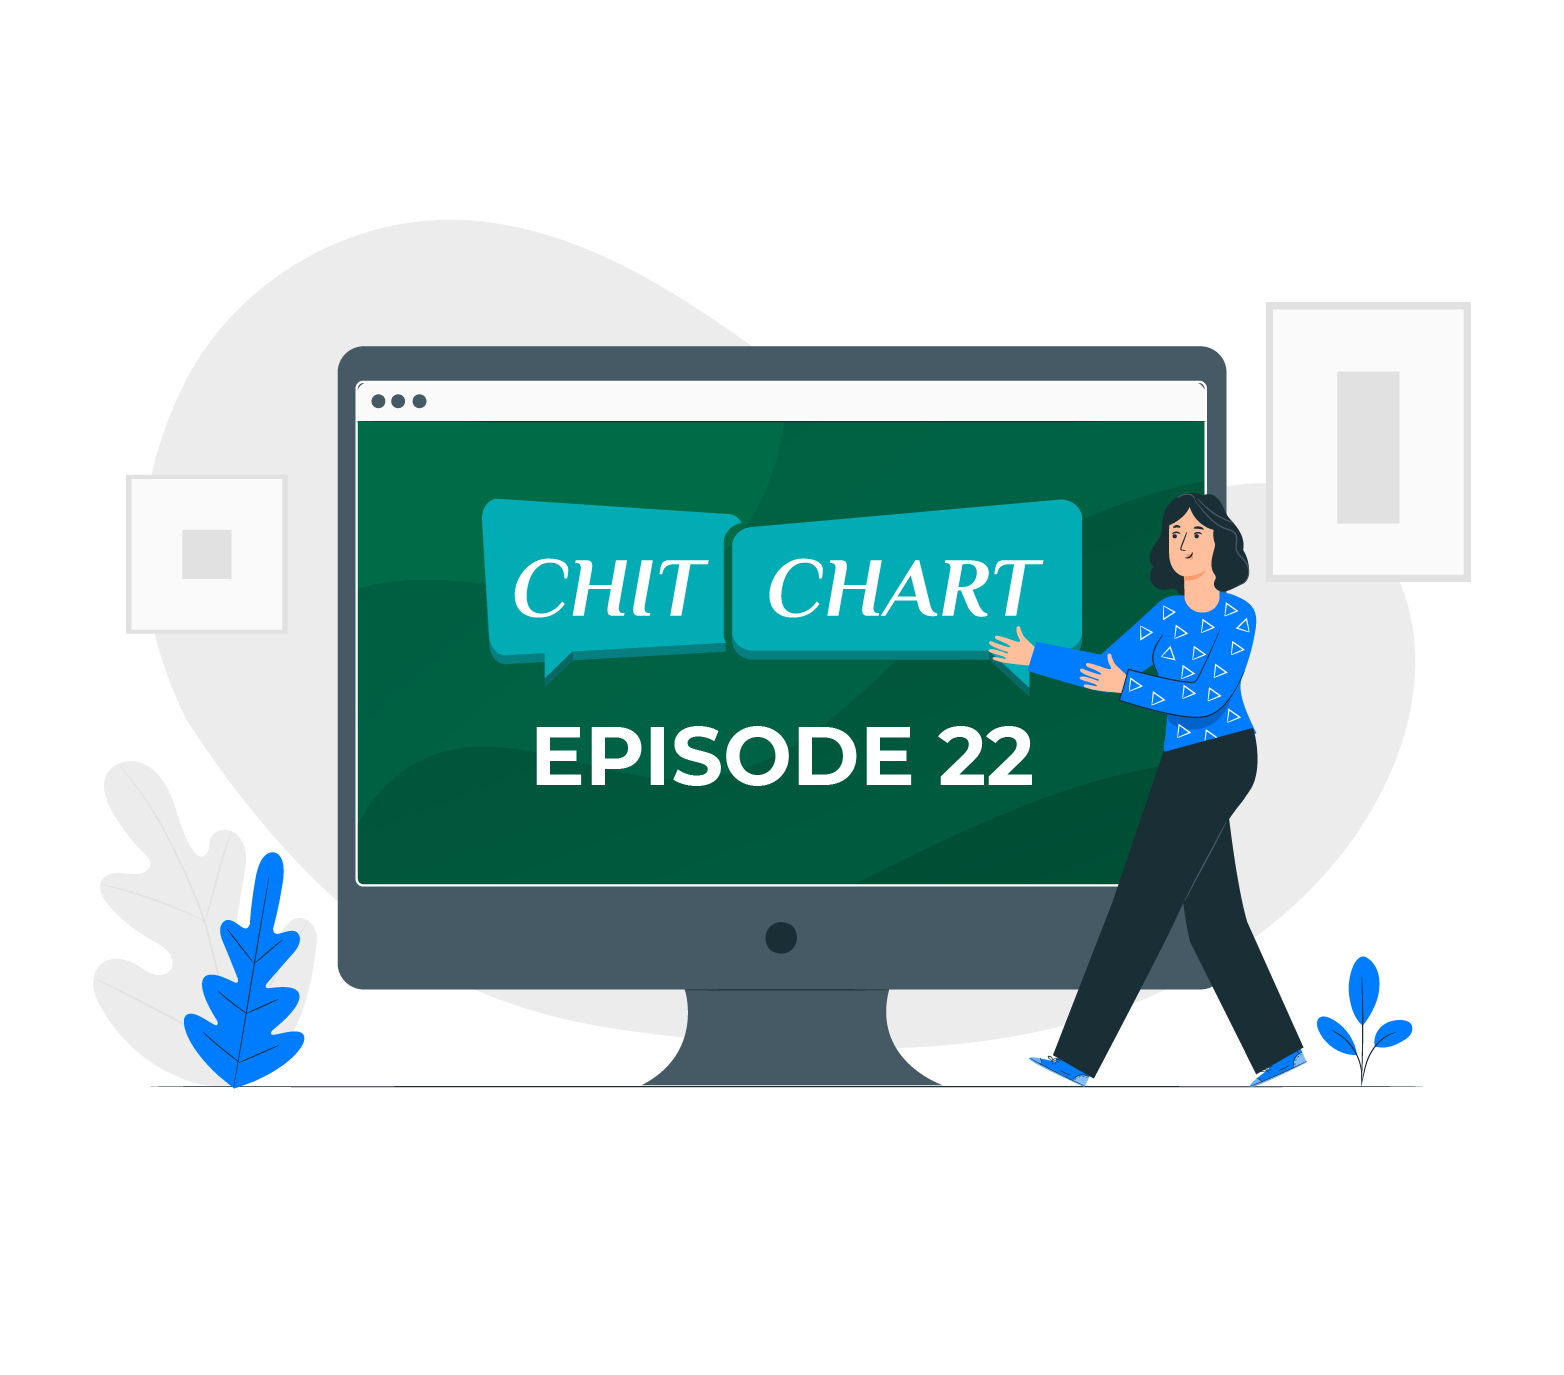 ChitChaRt : Episode 22